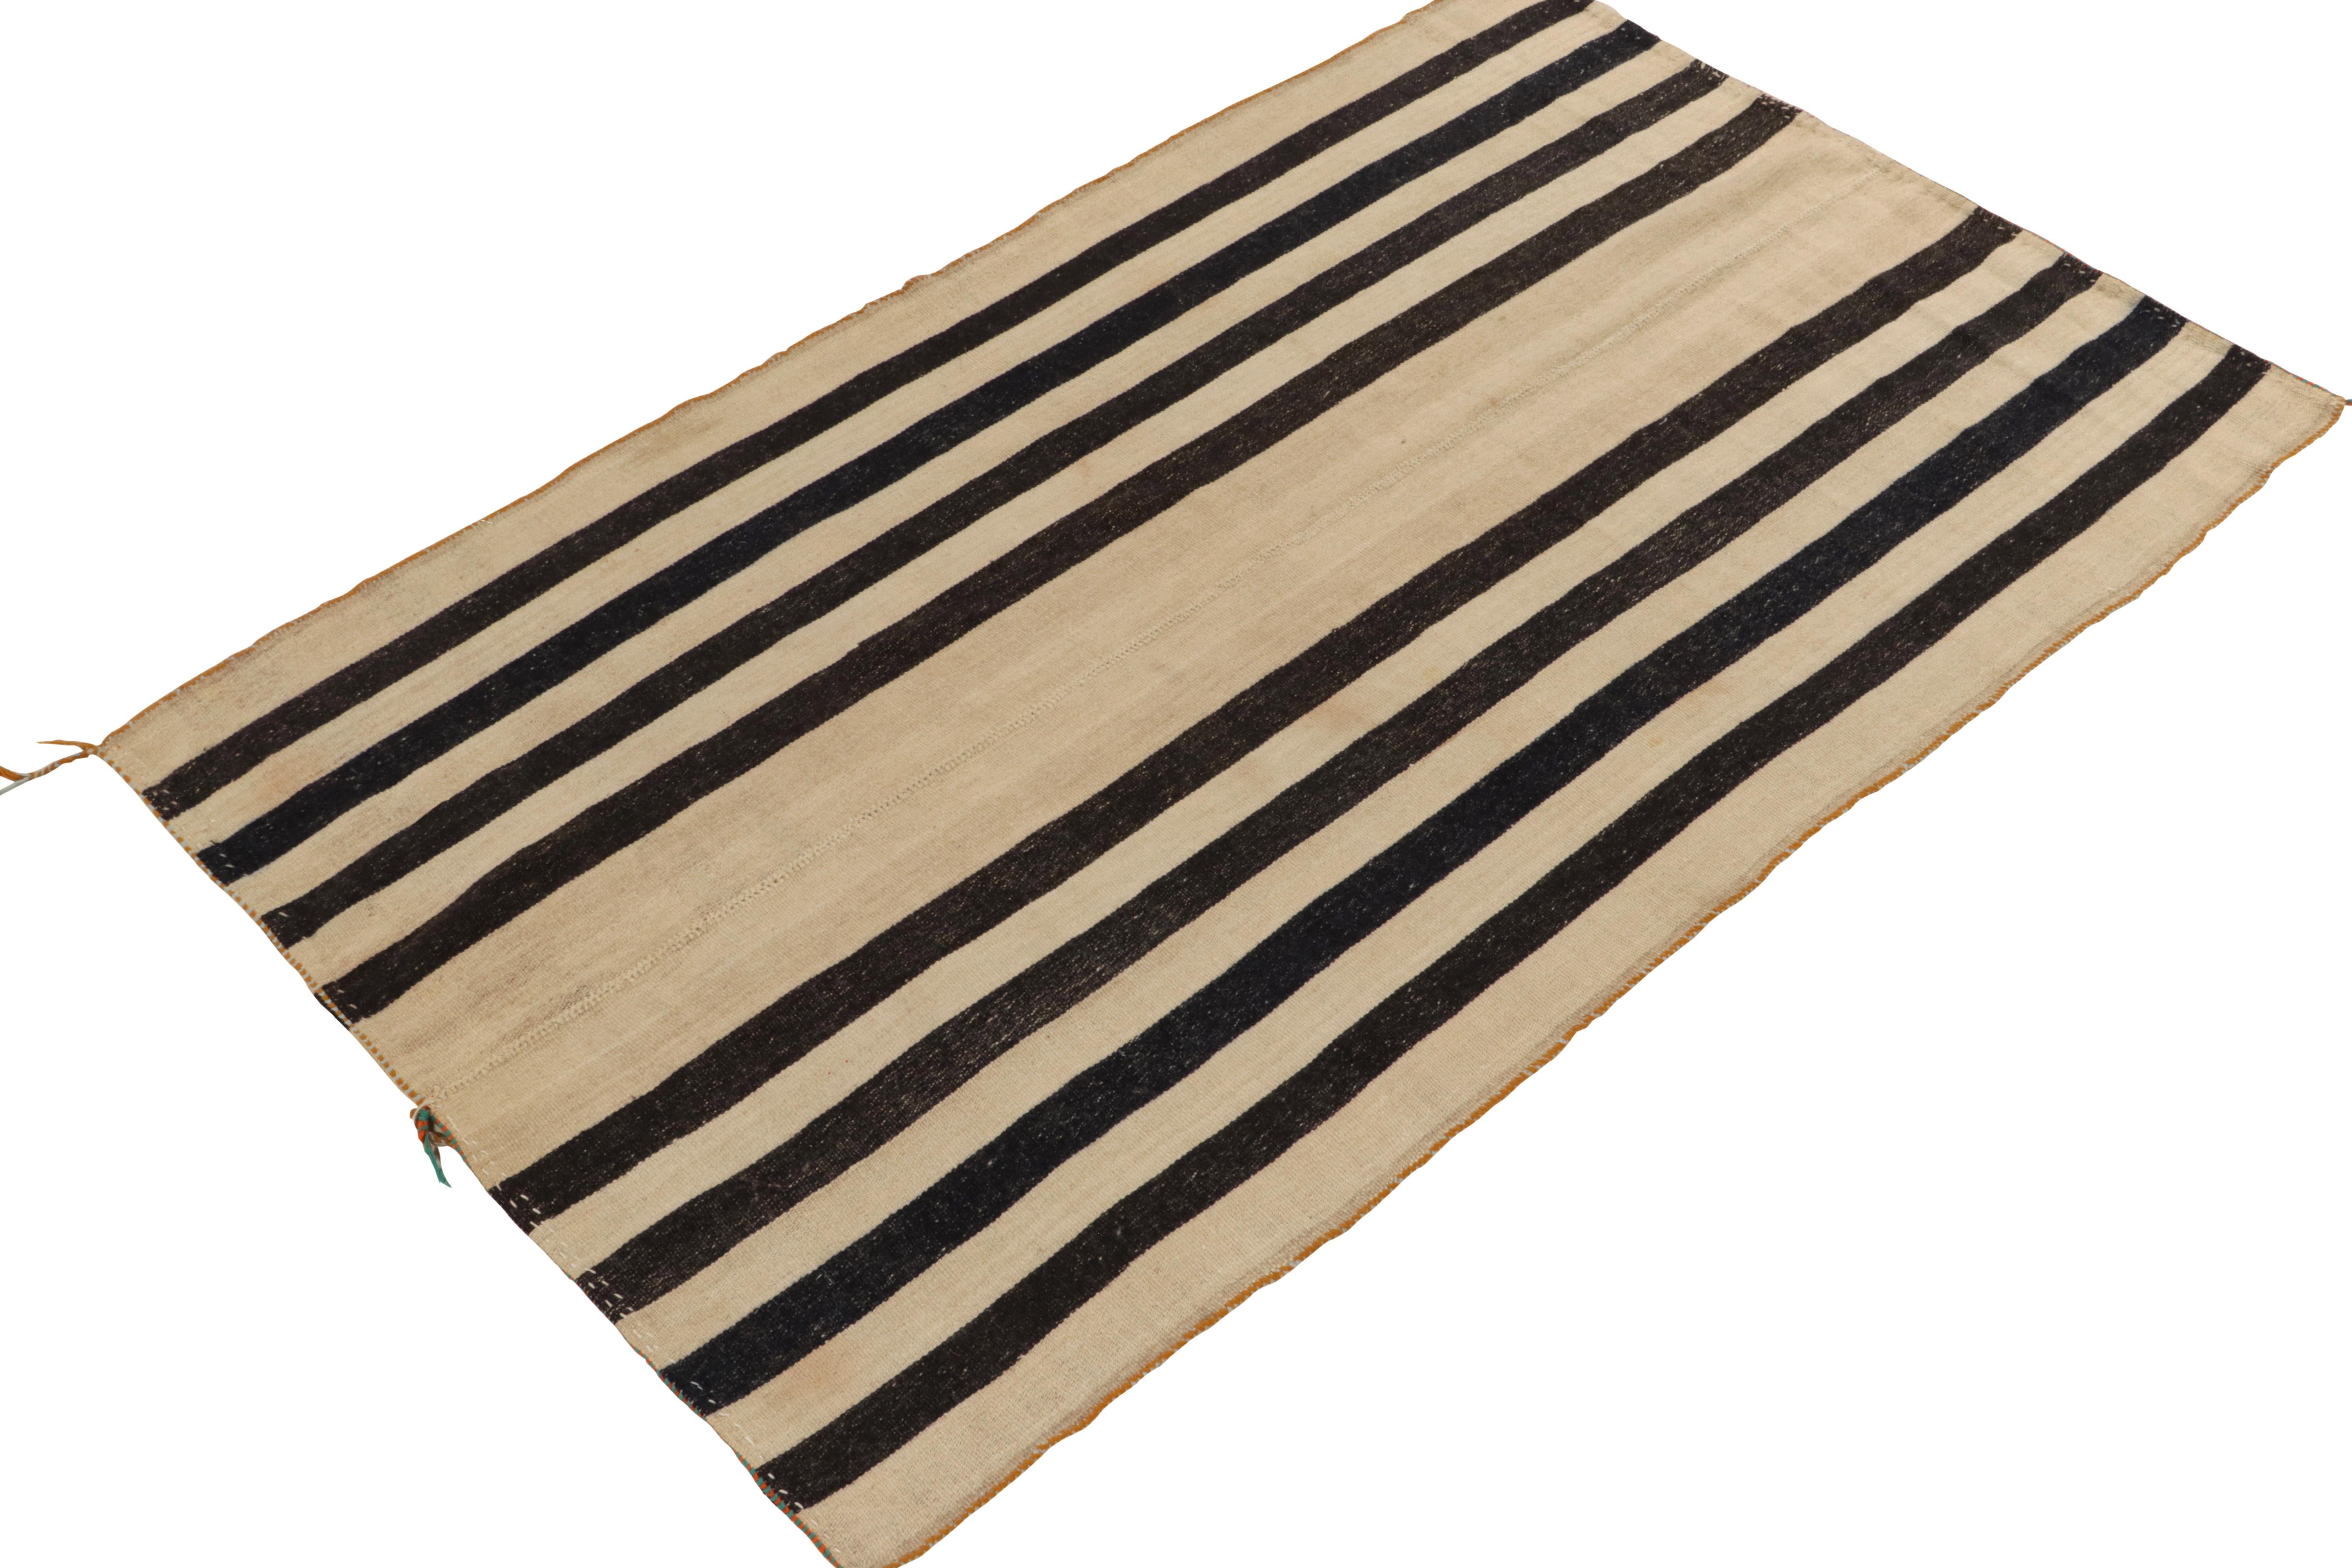 Originaire de 1950-1960, un tapis kilim vintage 5x8 de Turquie. Tissé à la main en laine avec la technique du tissage à panneaux, le design simple bénéficie d'un jeu neutre de beige-brun avec des rayures noires, complété par de légers éléments de